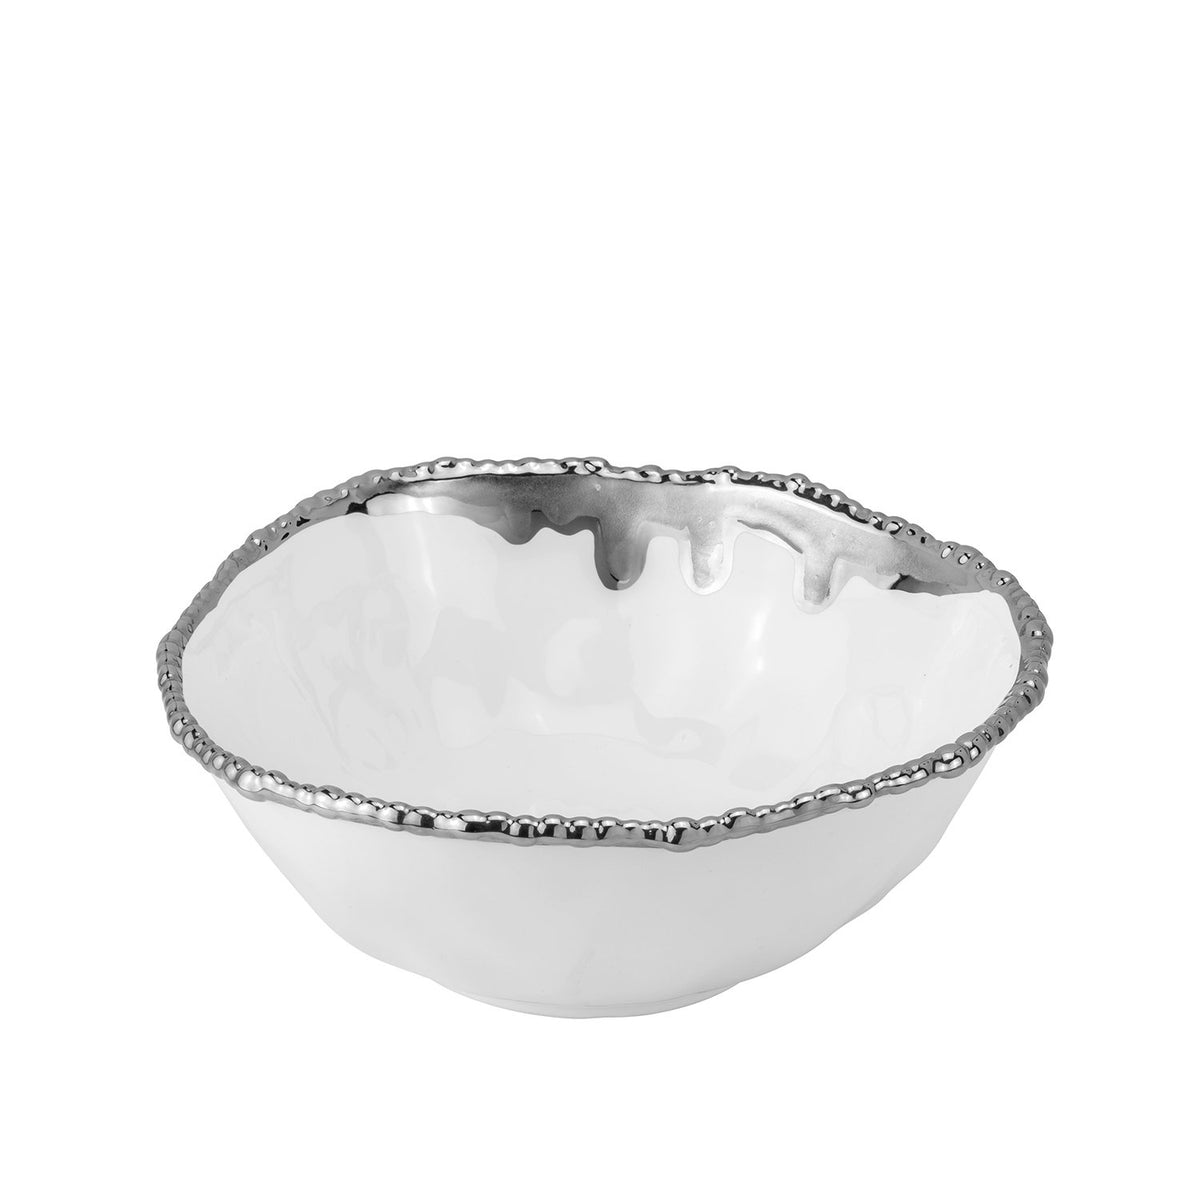 Vort Gift - Silver Designed Salad Bowl with Servers